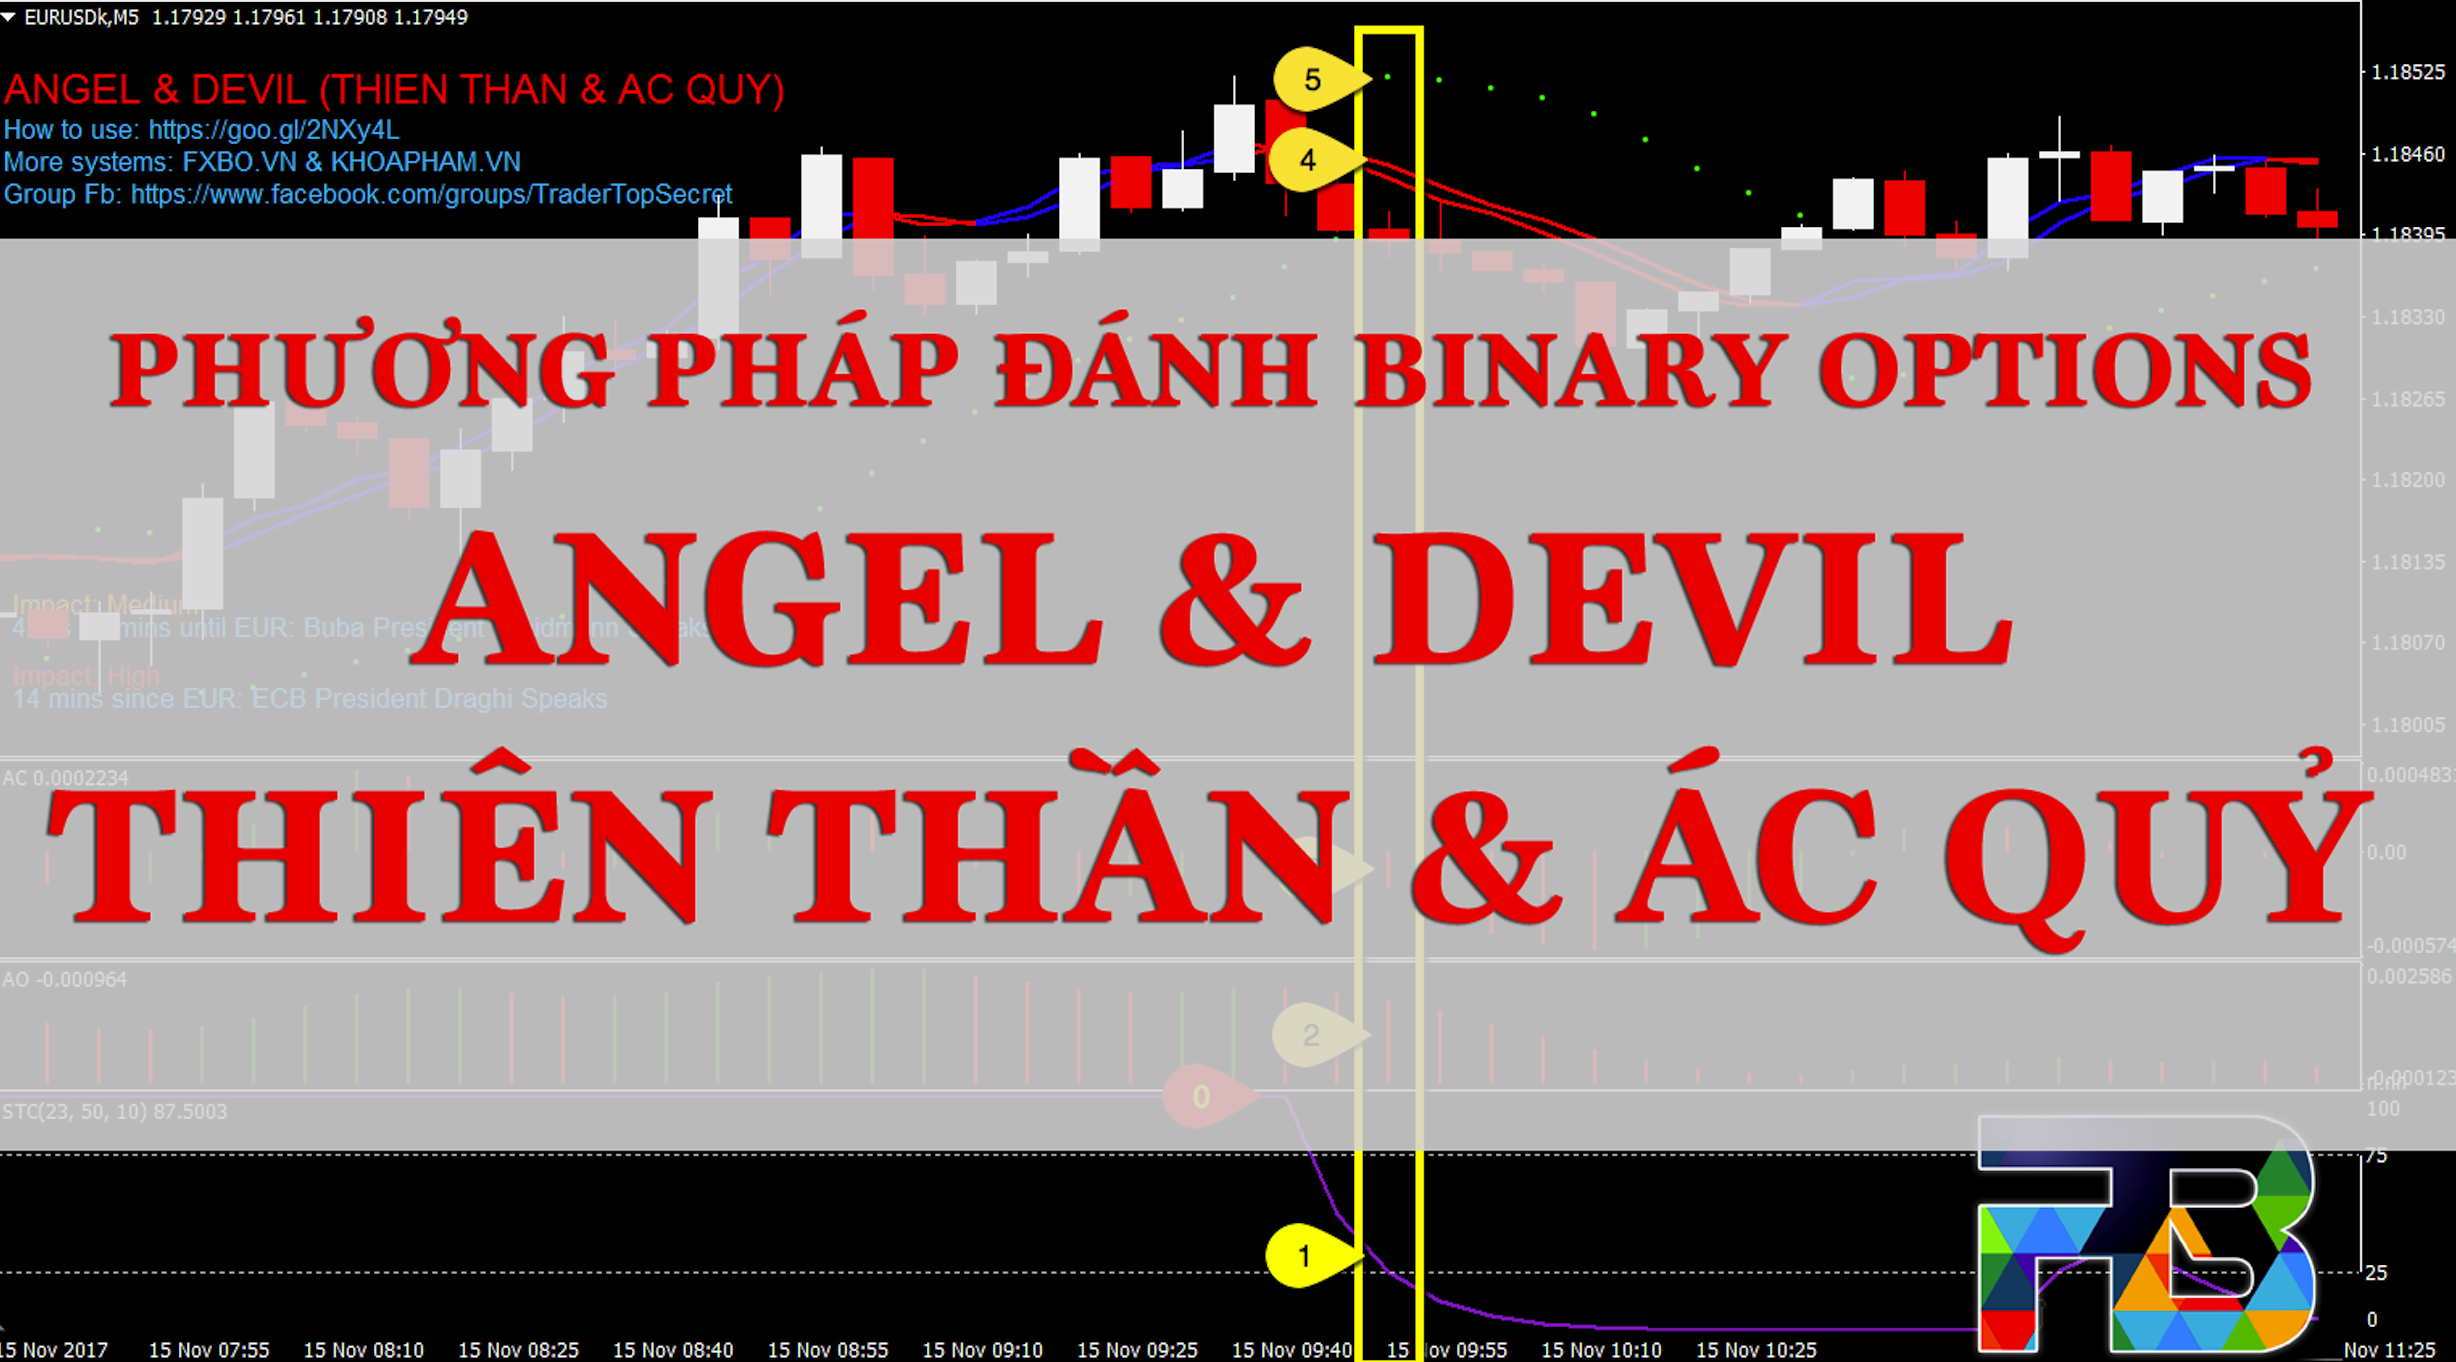 [Binary Options] Phương pháp Angle & Devil - Win rate upper 70%